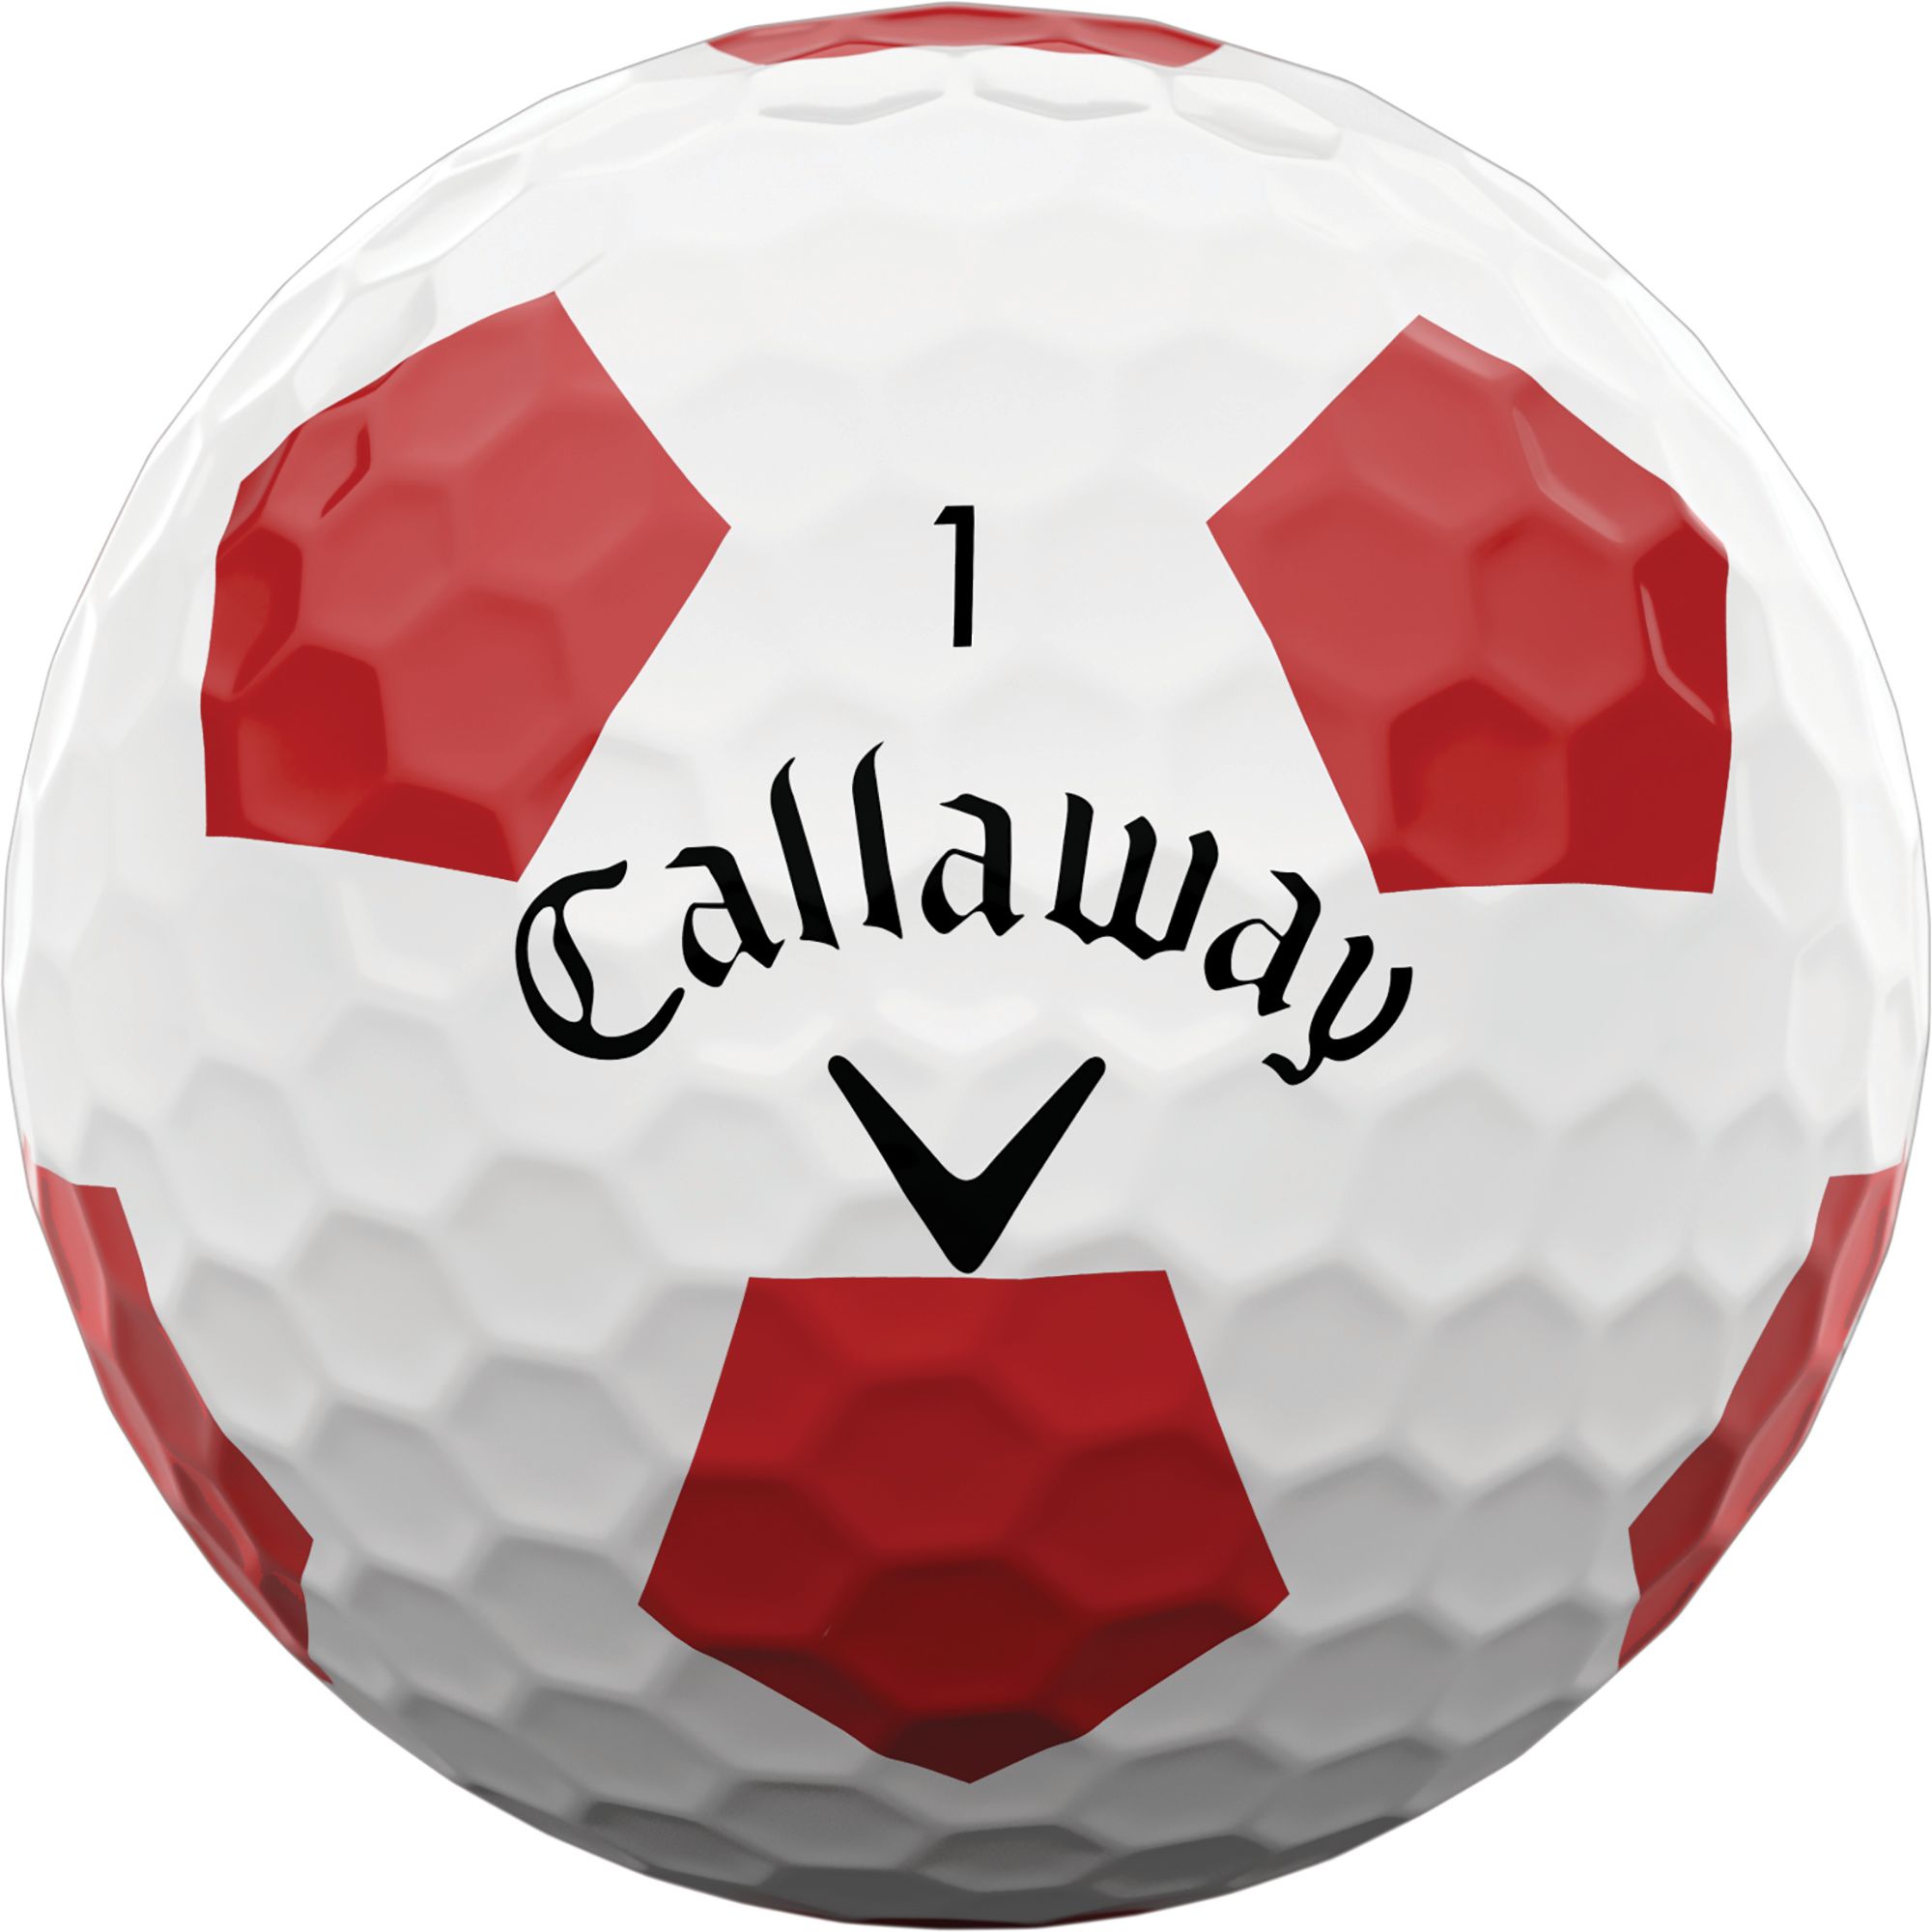 Callaway 2022 Chrome Soft Truvis Golf Balls